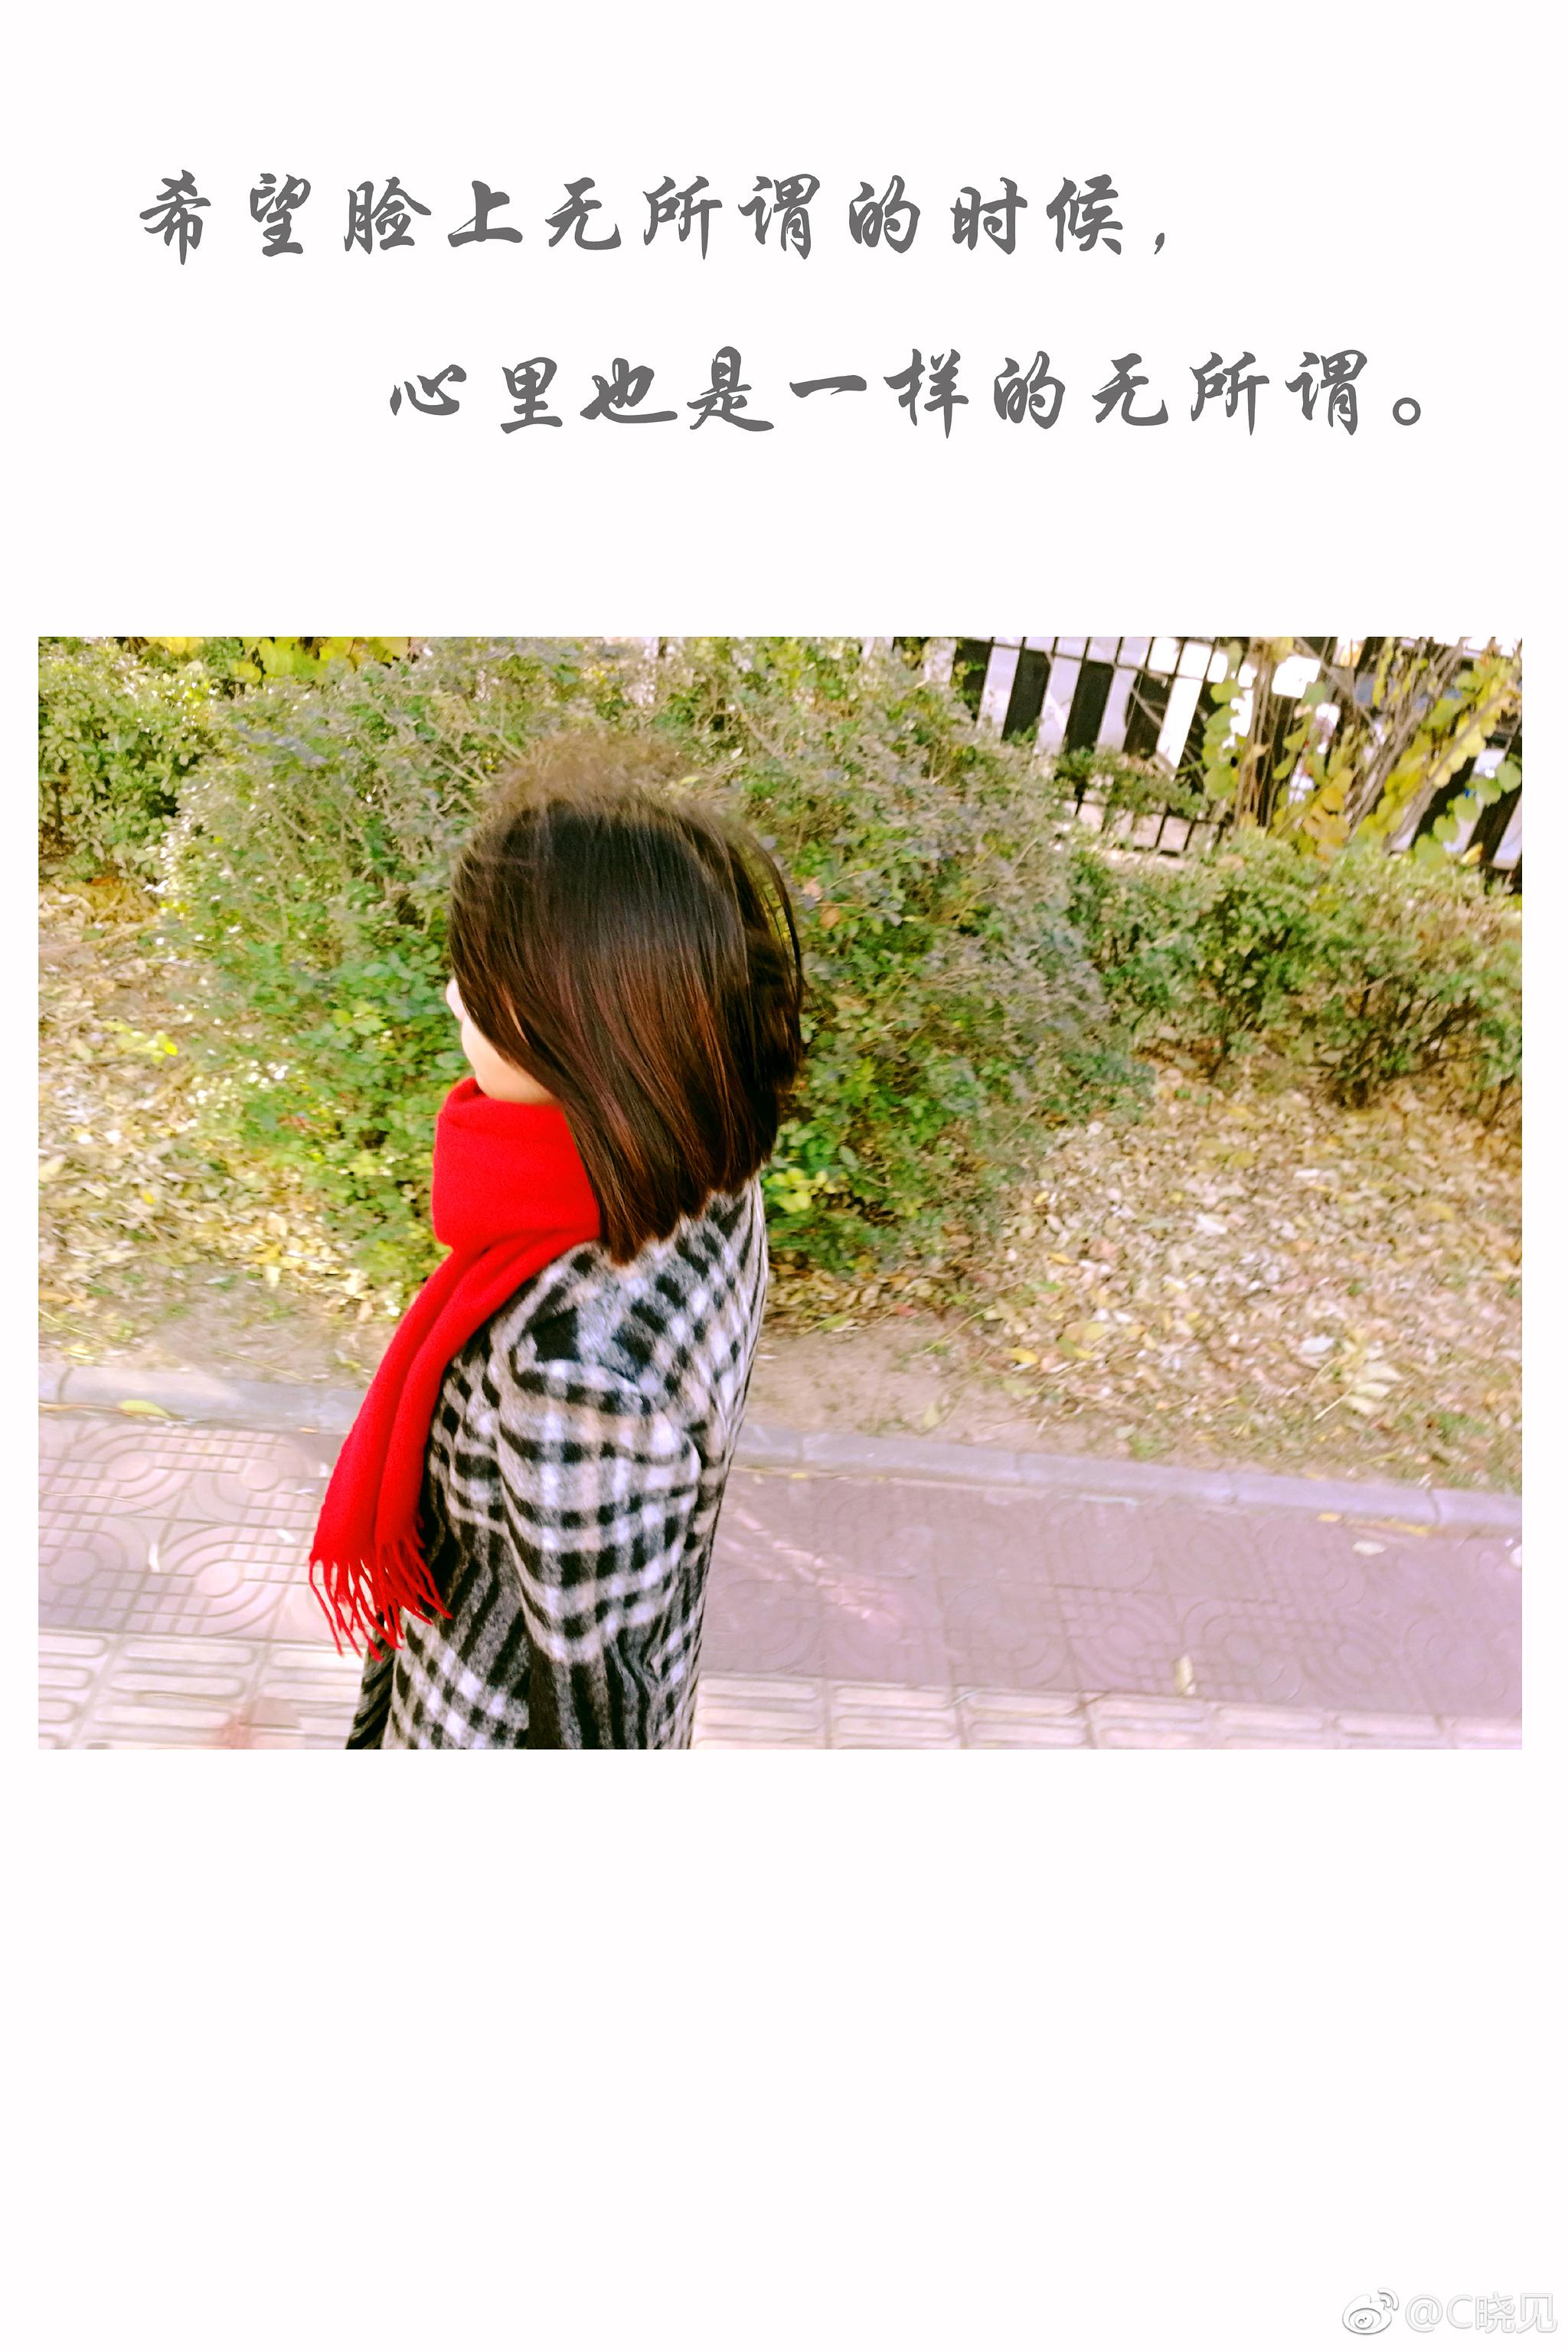 小仙女 freetoedit #小仙女 sticker by @穿着校服逛酒吧♥